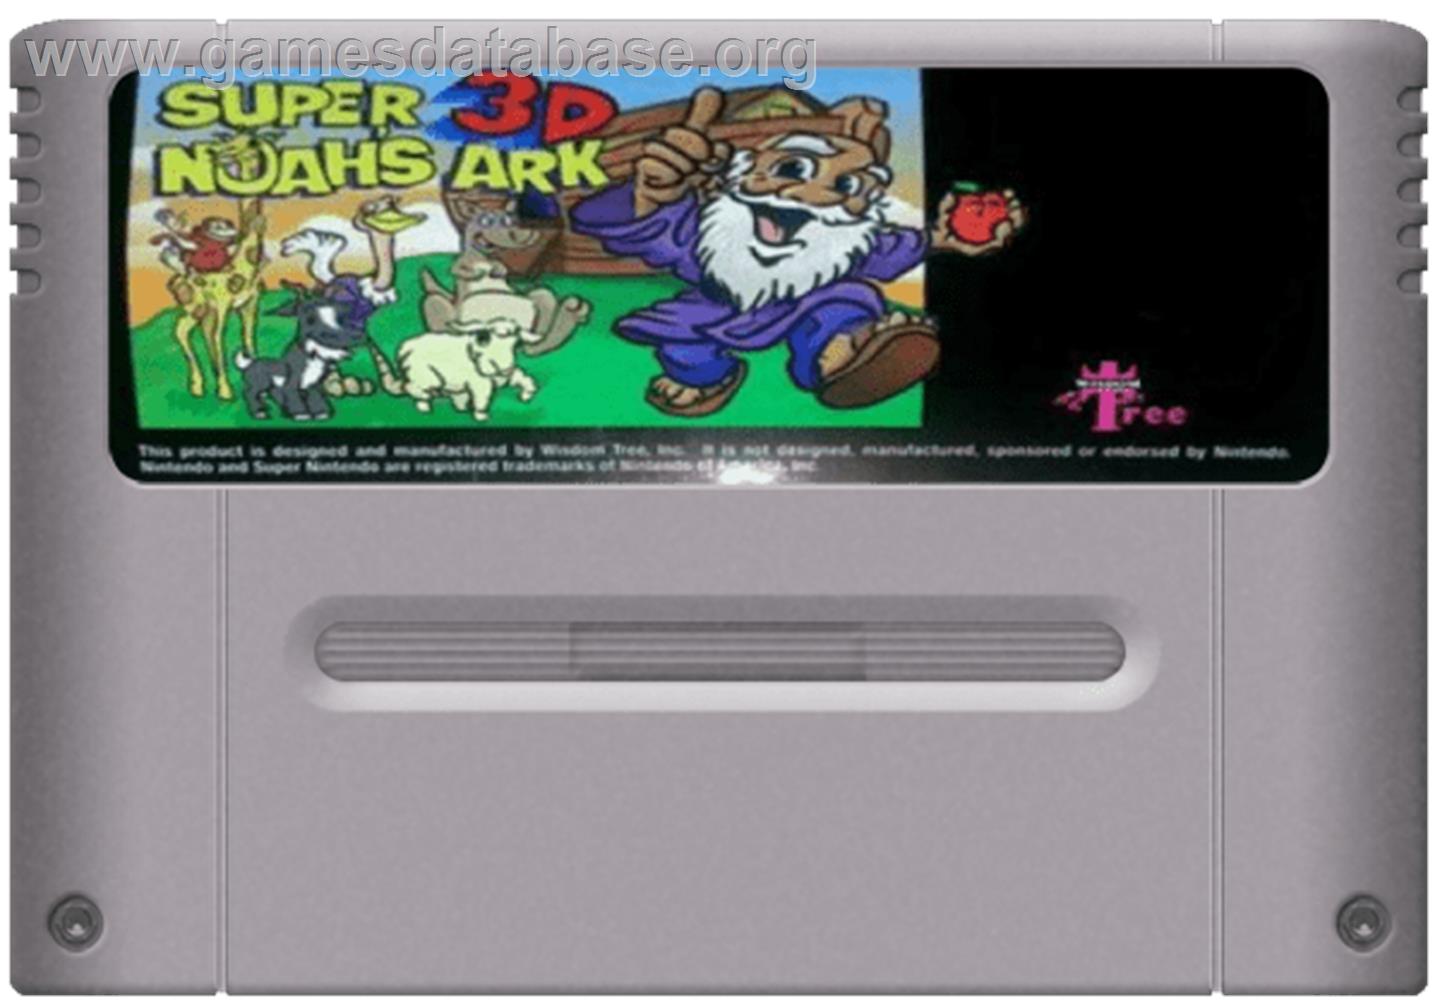 Super Noah's Ark 3-D - Nintendo SNES - Artwork - Cartridge